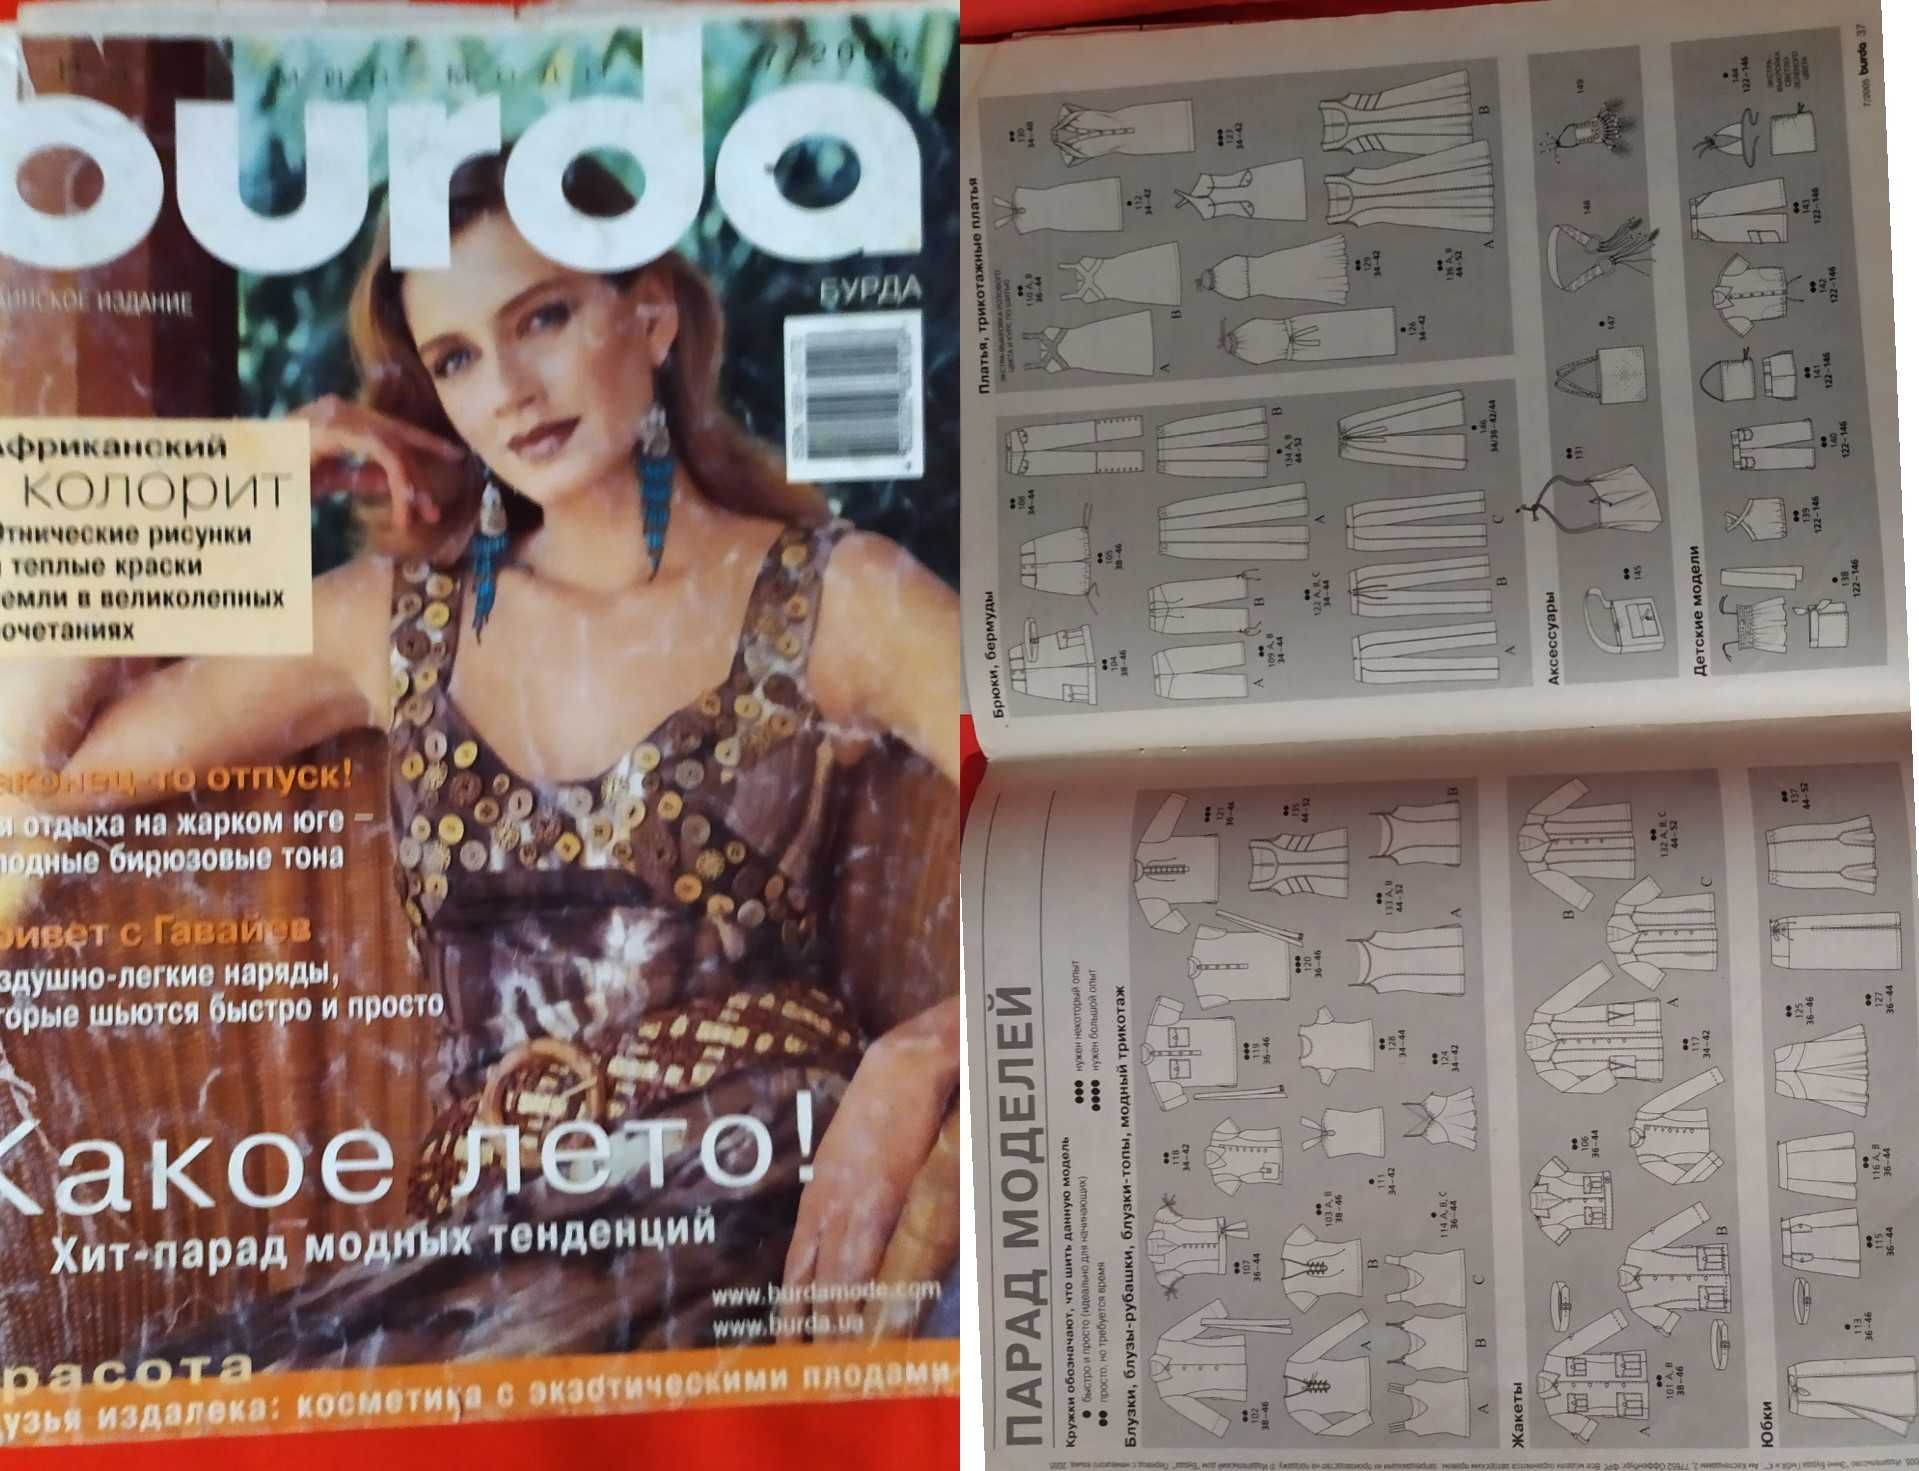 Продам Журнали Burda 2005 рік